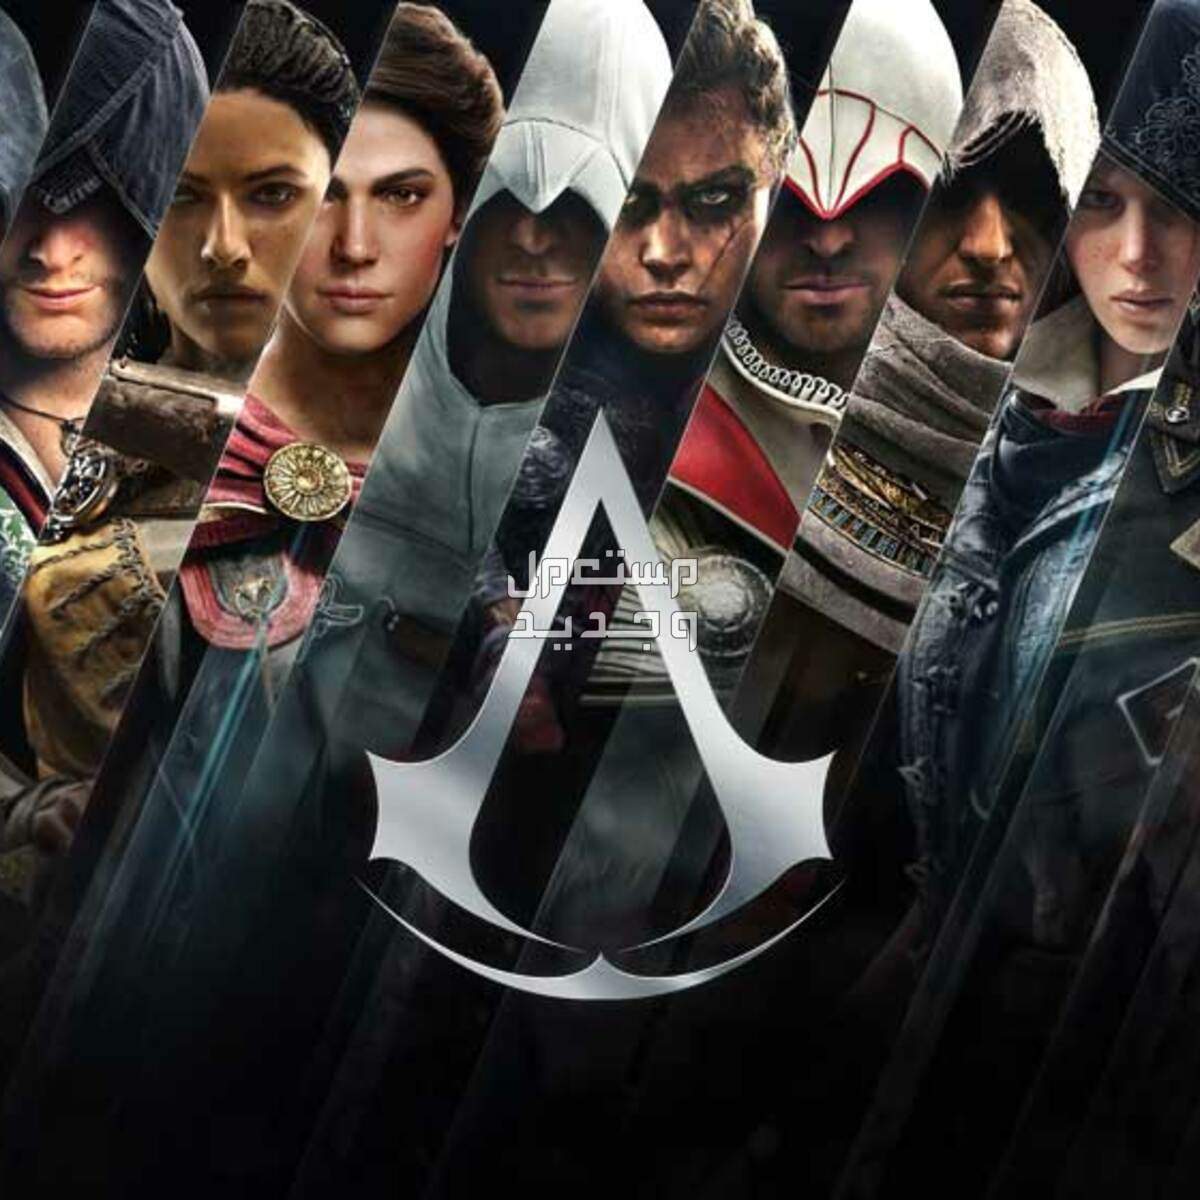 معك لابتوب ألعاب؟ تسلى و تعلم التاريخ مع Assassin's Creed في الإمارات العربية المتحدة سلسلة ألعاب أساسنز كريد